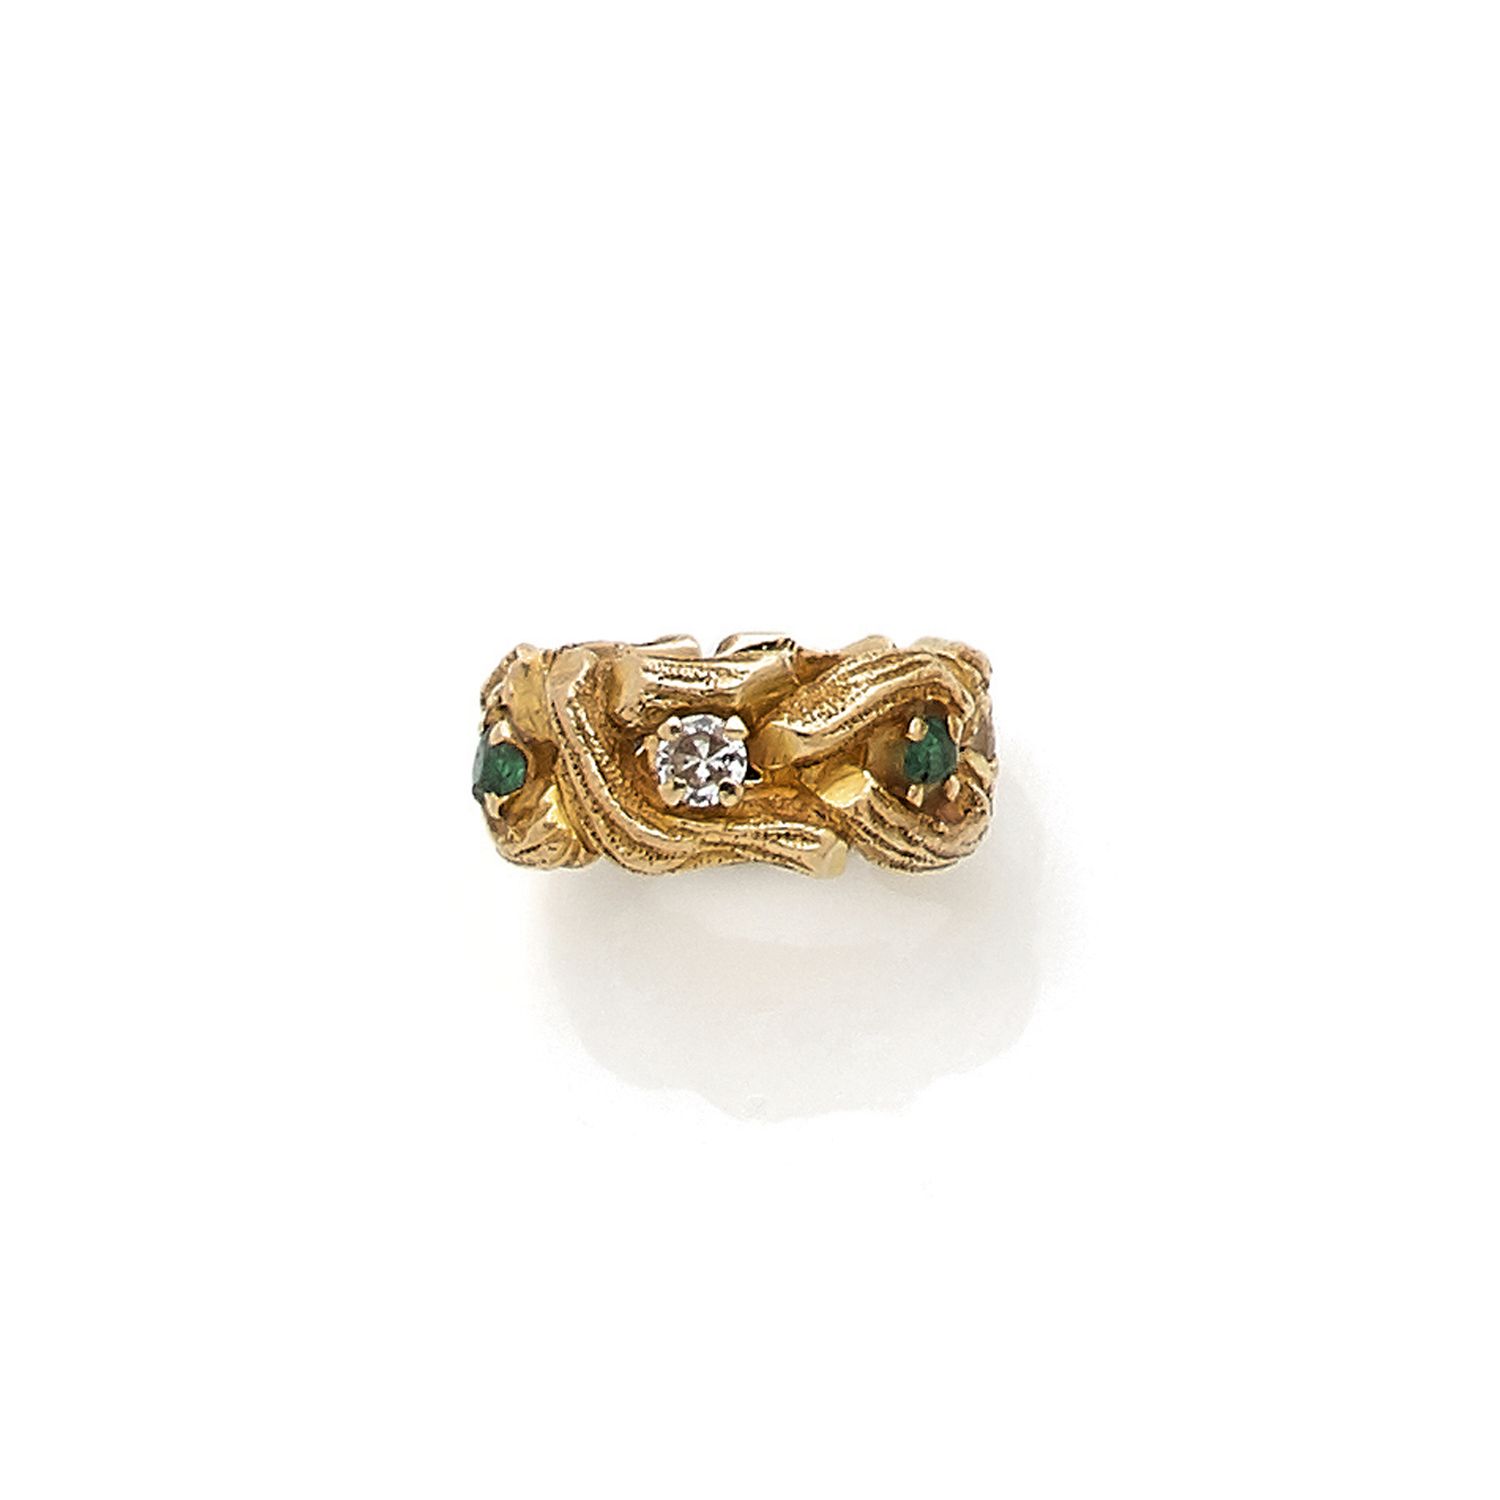 Null 原创18K（750‰）仿木黄金戒指，镶有钻石和绿宝石（缺少一颗绿宝石）

Tdd : 49

毛重：9.1克